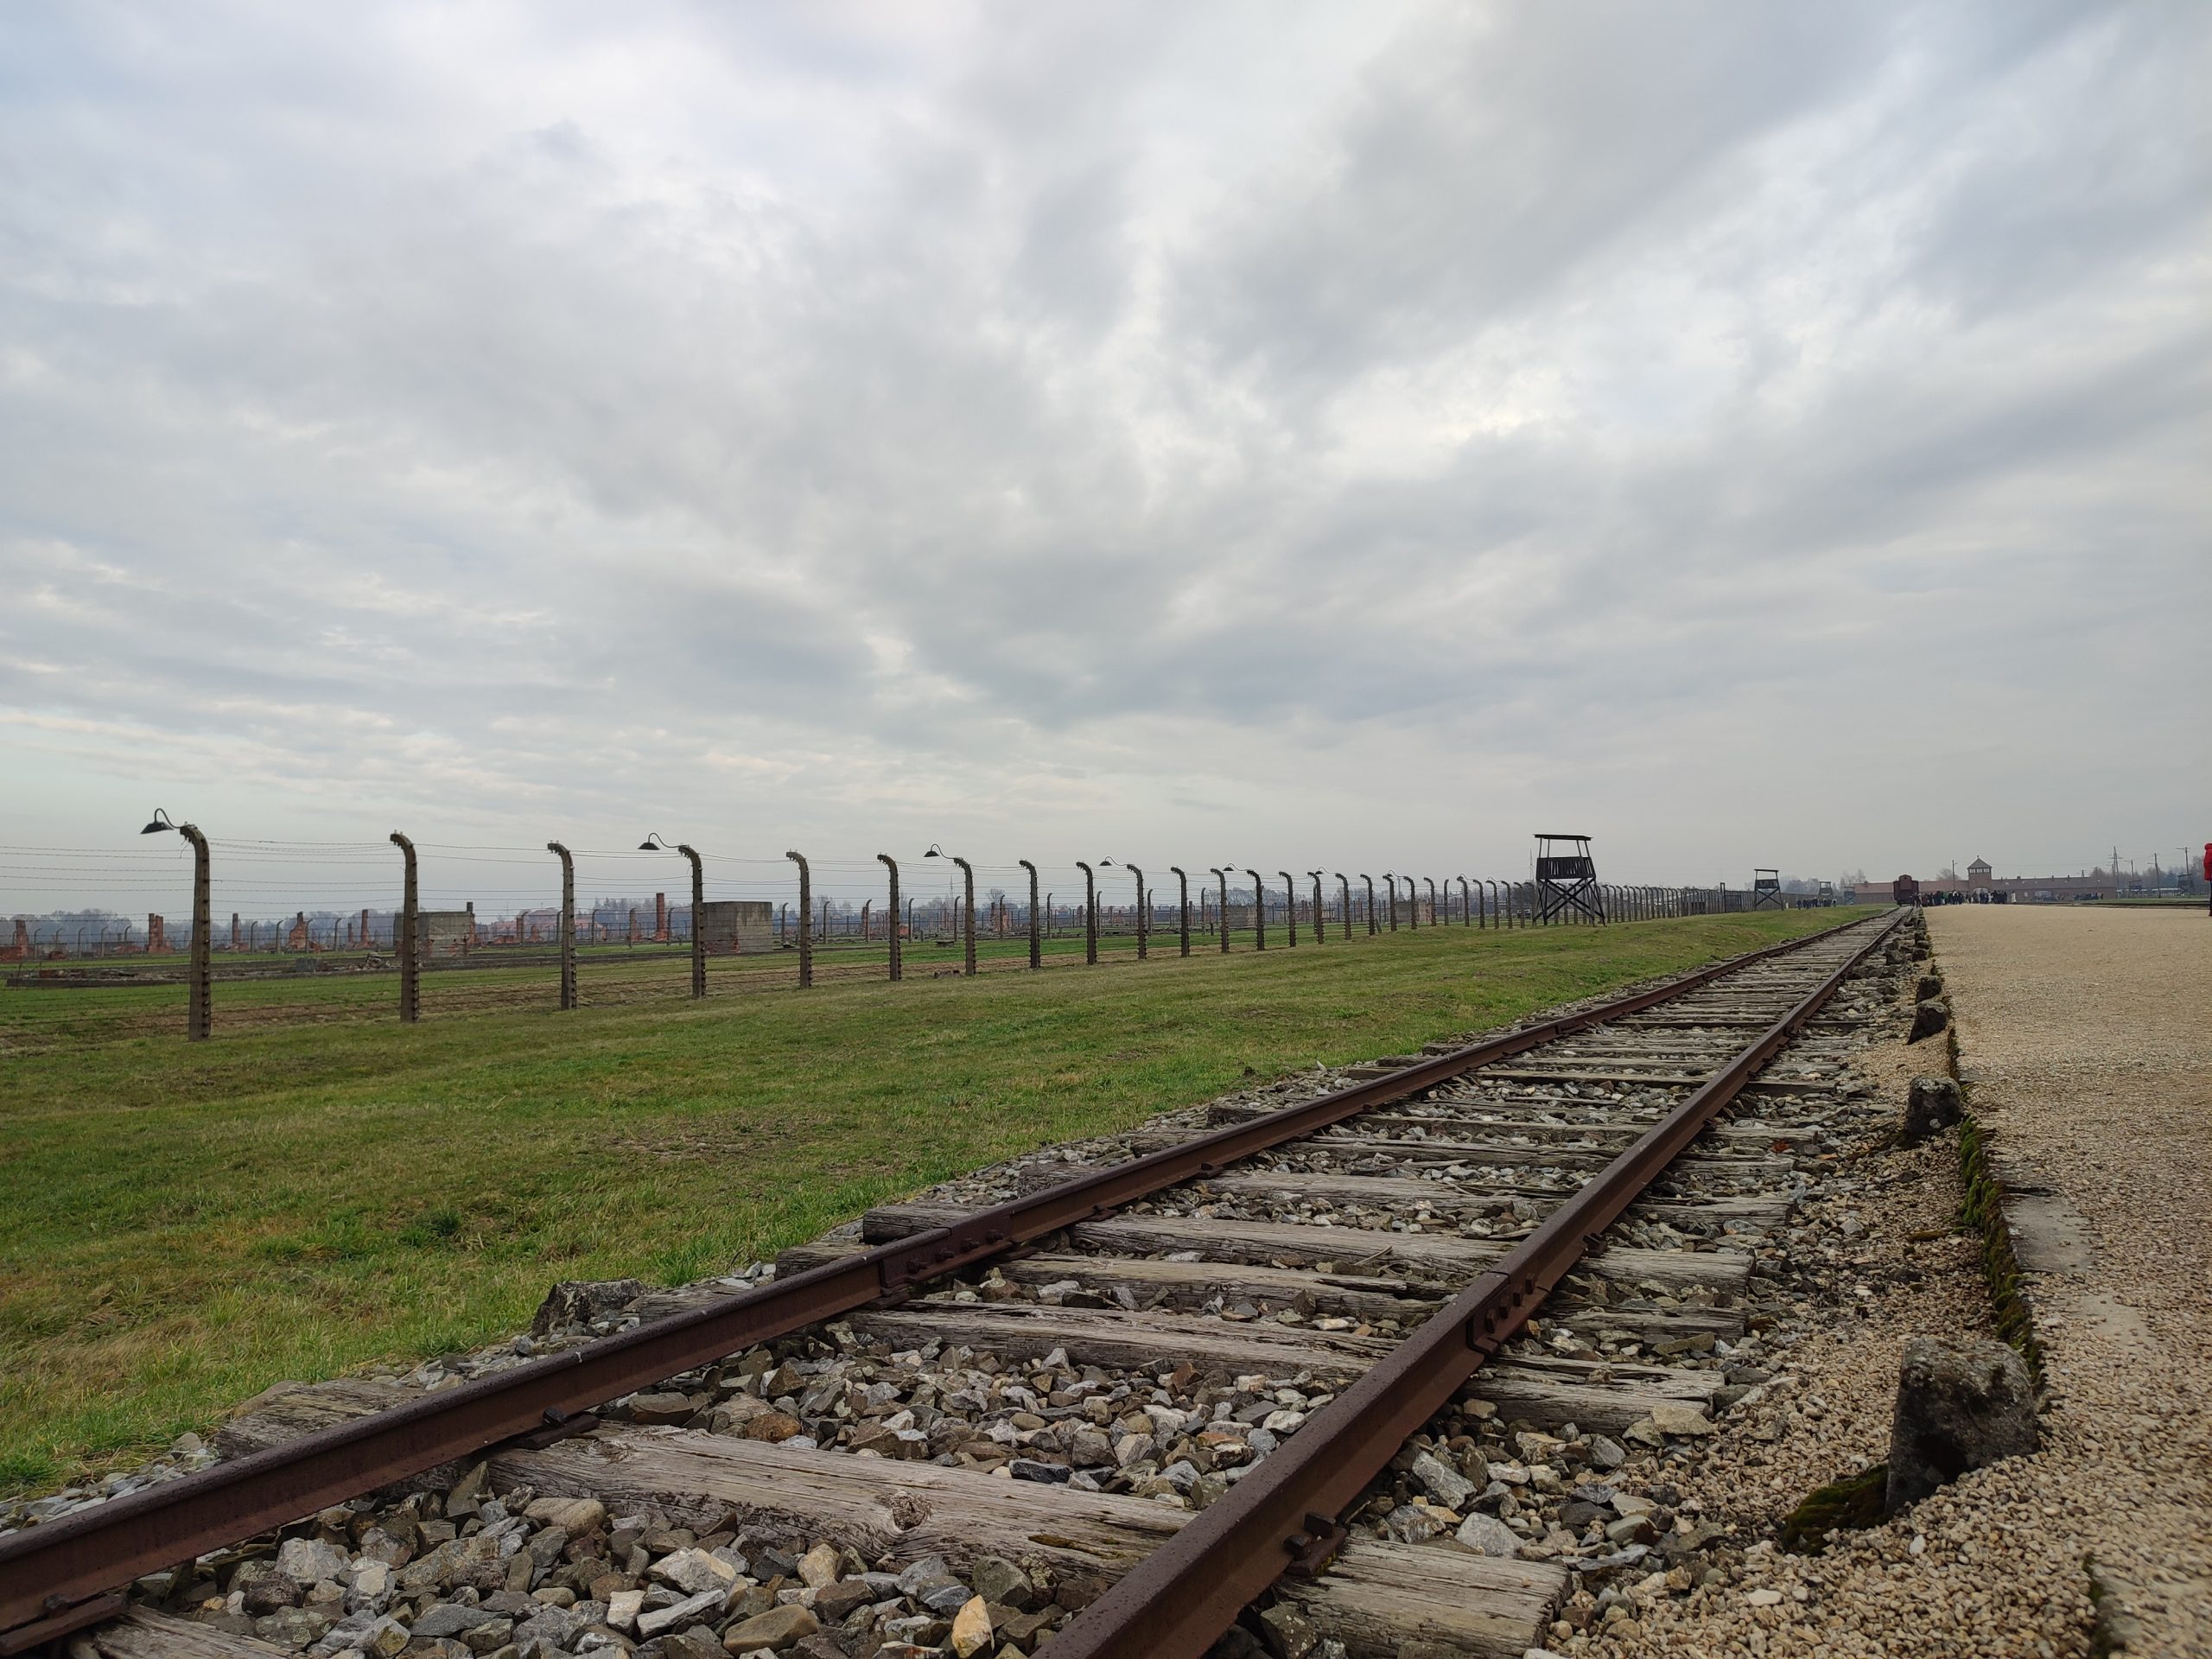  Uczniowie kl. 4B i 4D zwiedzili były niemiecki nazistowski obóz koncentracyjny Auschwitz-Birkenau.